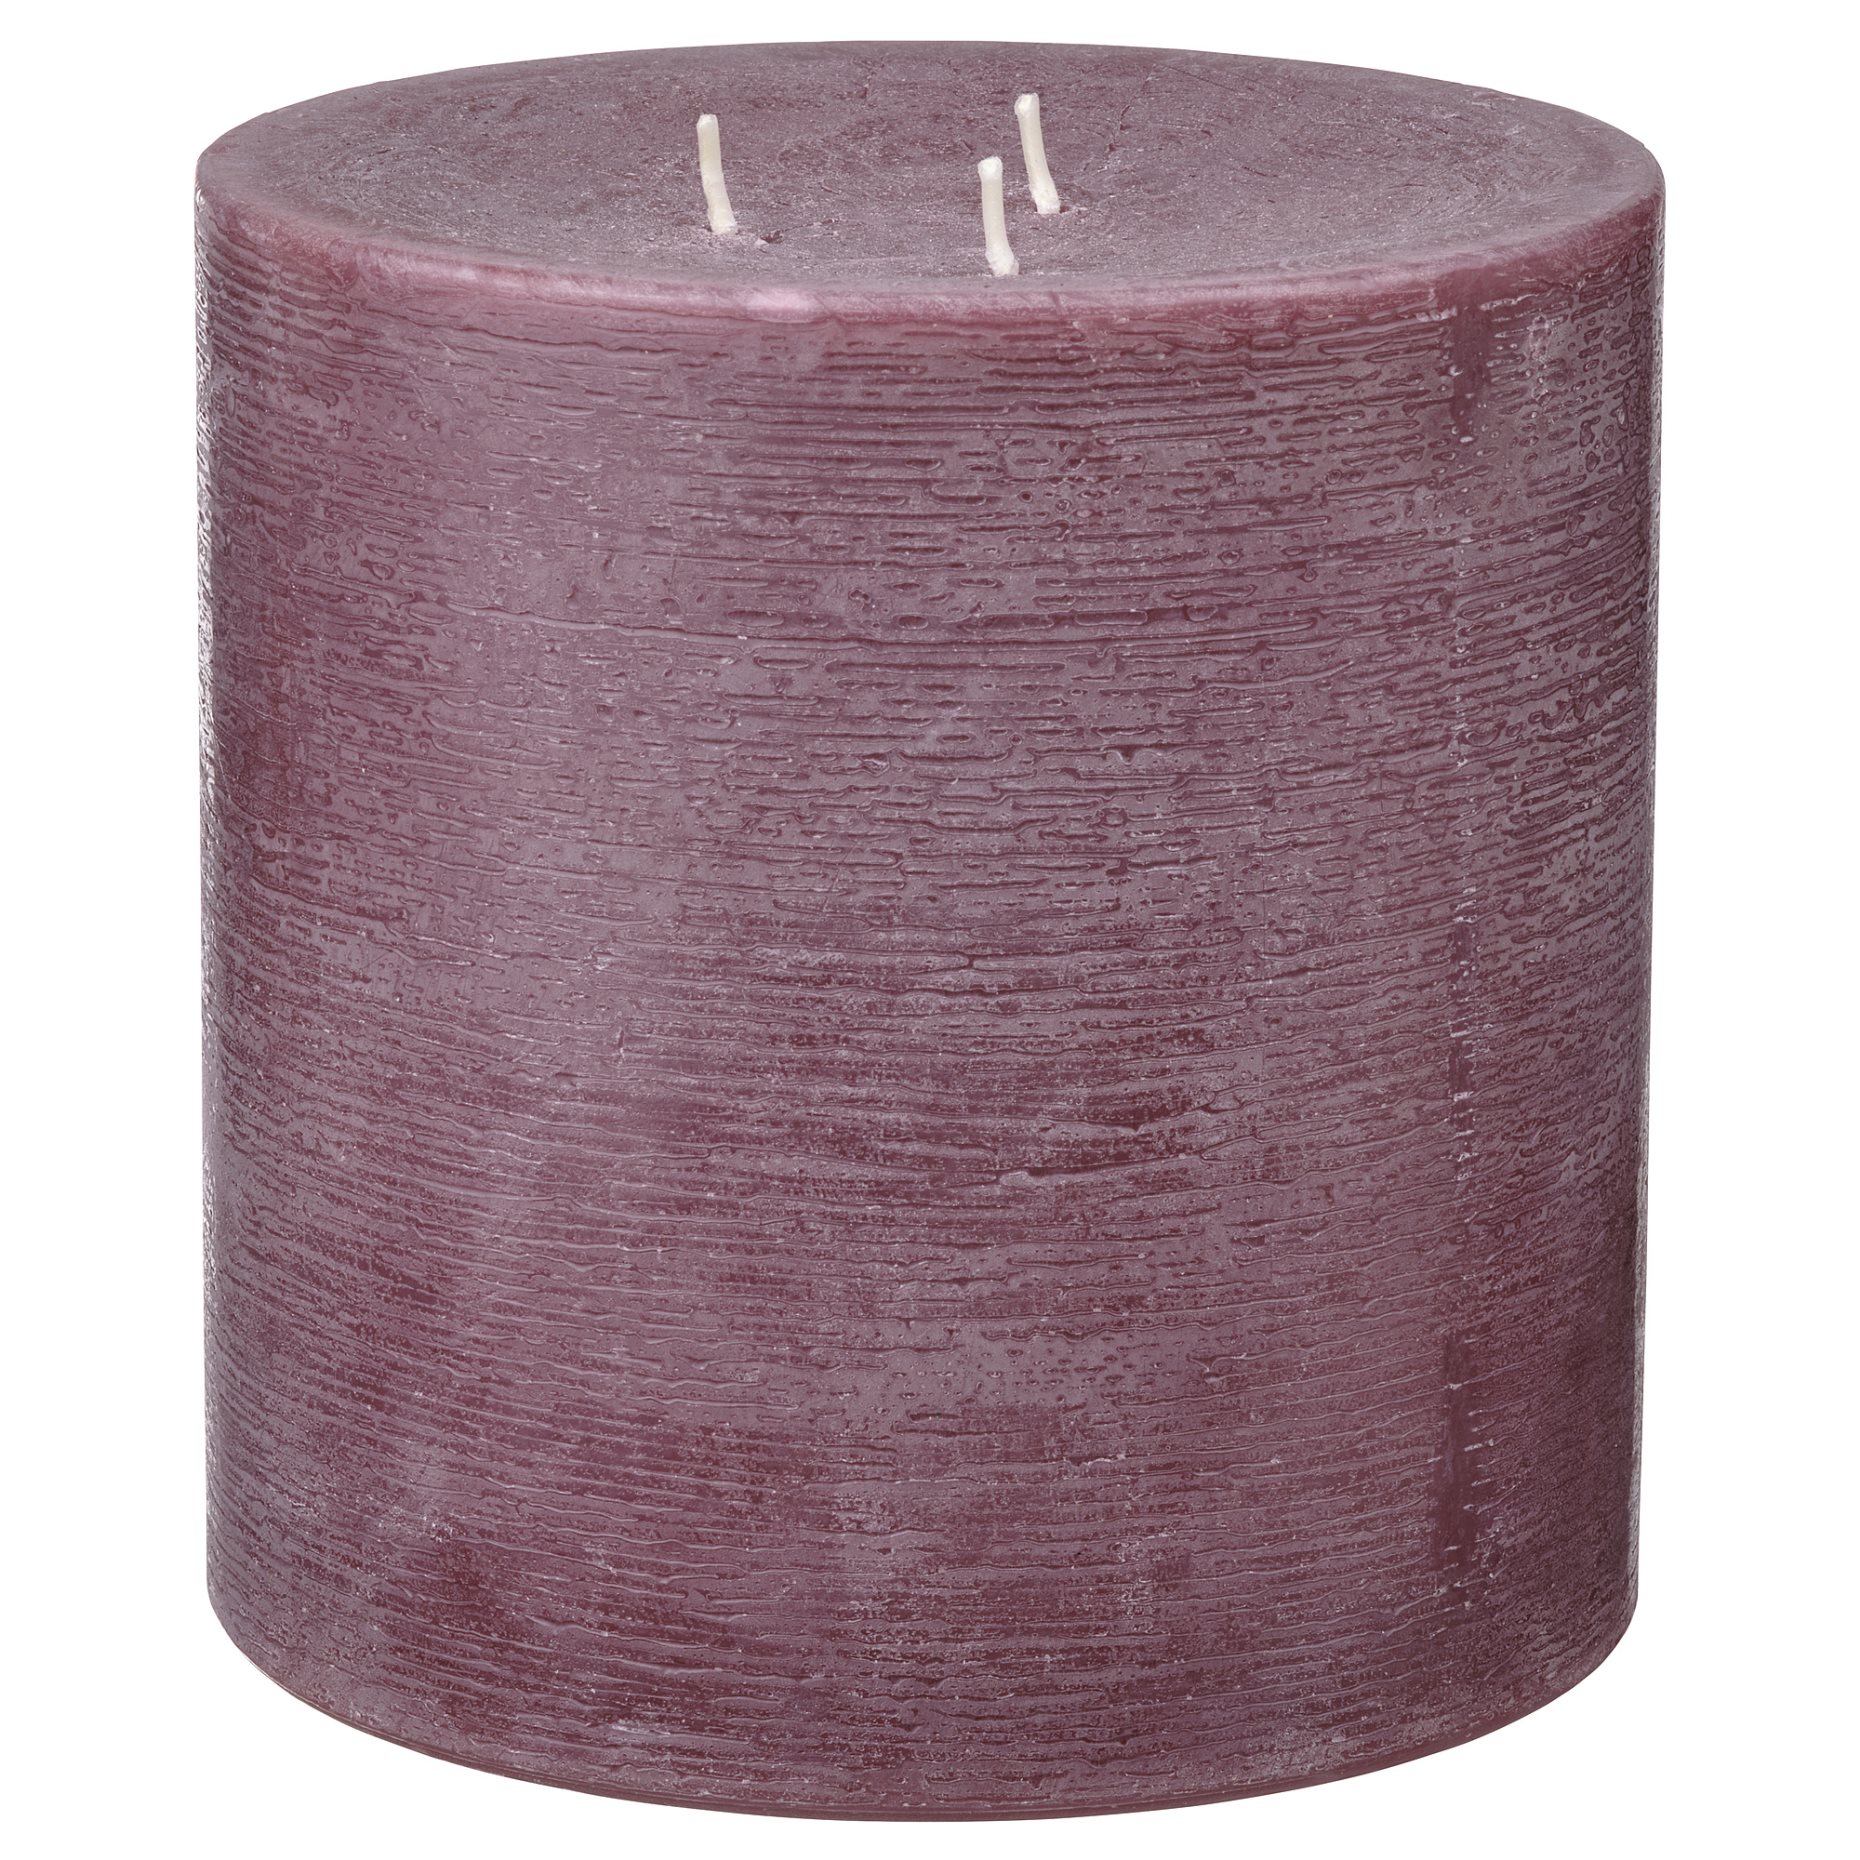 GRÄNSSKOG, unscented pillar candle with 3 wicks, 14 cm, 605.515.79